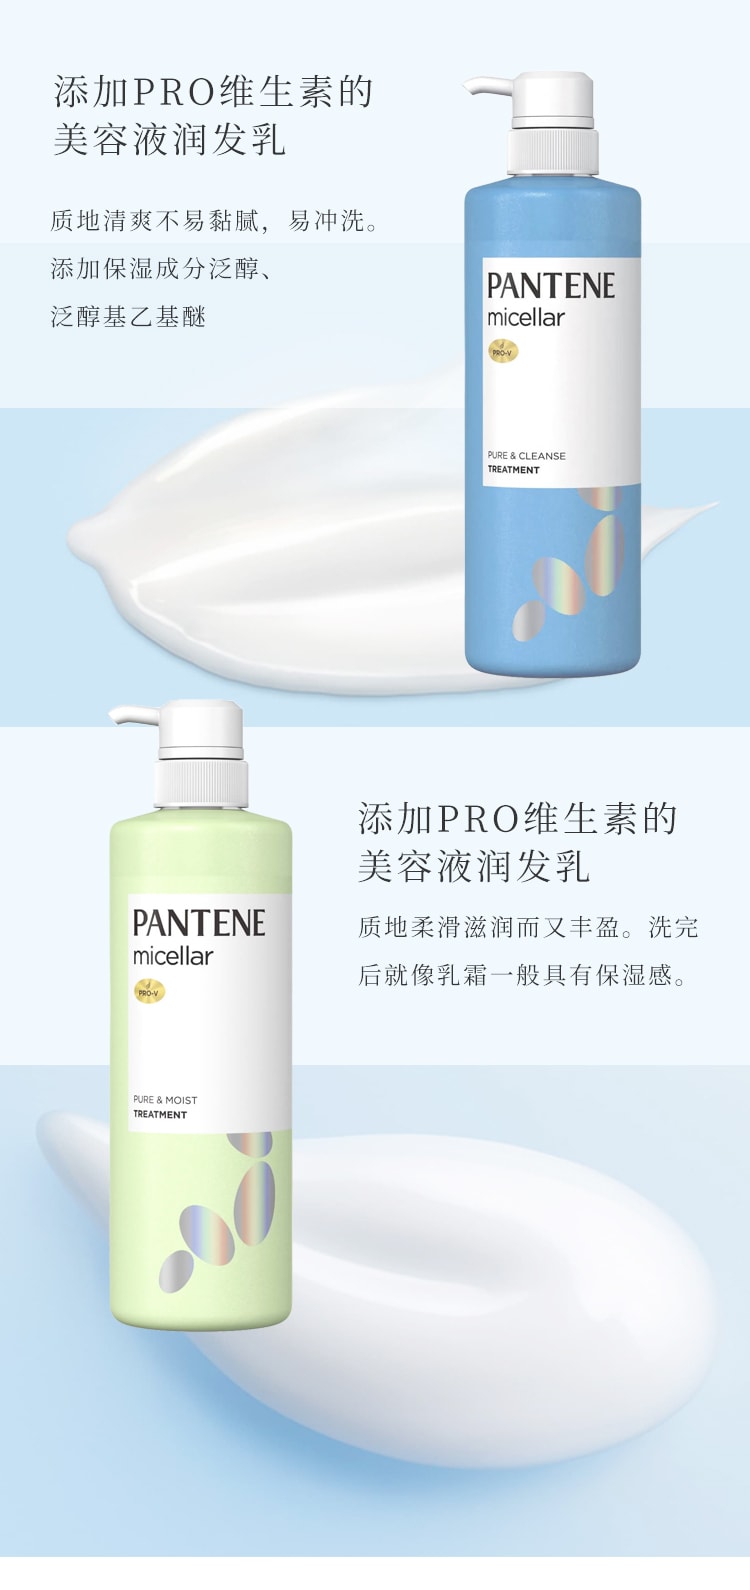 日本P&G寶潔 PANTENE潘婷 深層清潔頭皮控油護髮素 500g